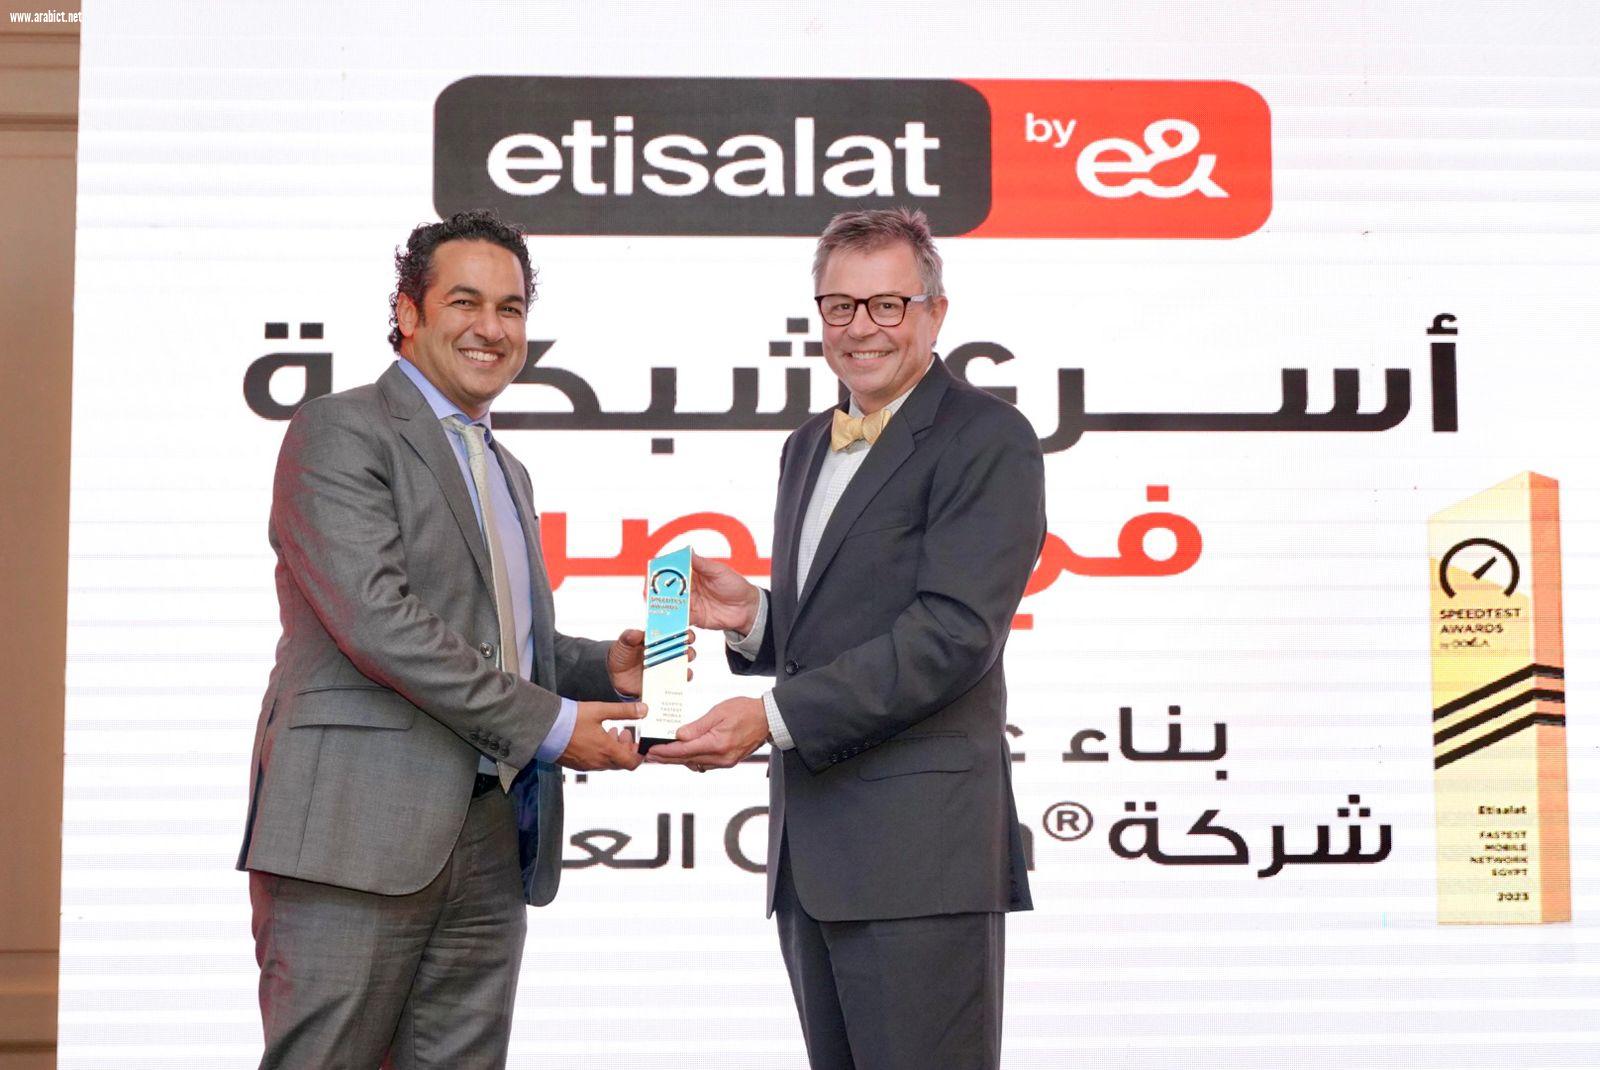 تتويجاً لجهودها لمواكبة التطور التكنولوجي   اتصالات من &e في مصر تفوز بجائزة أسرع شبكة في الدولة   